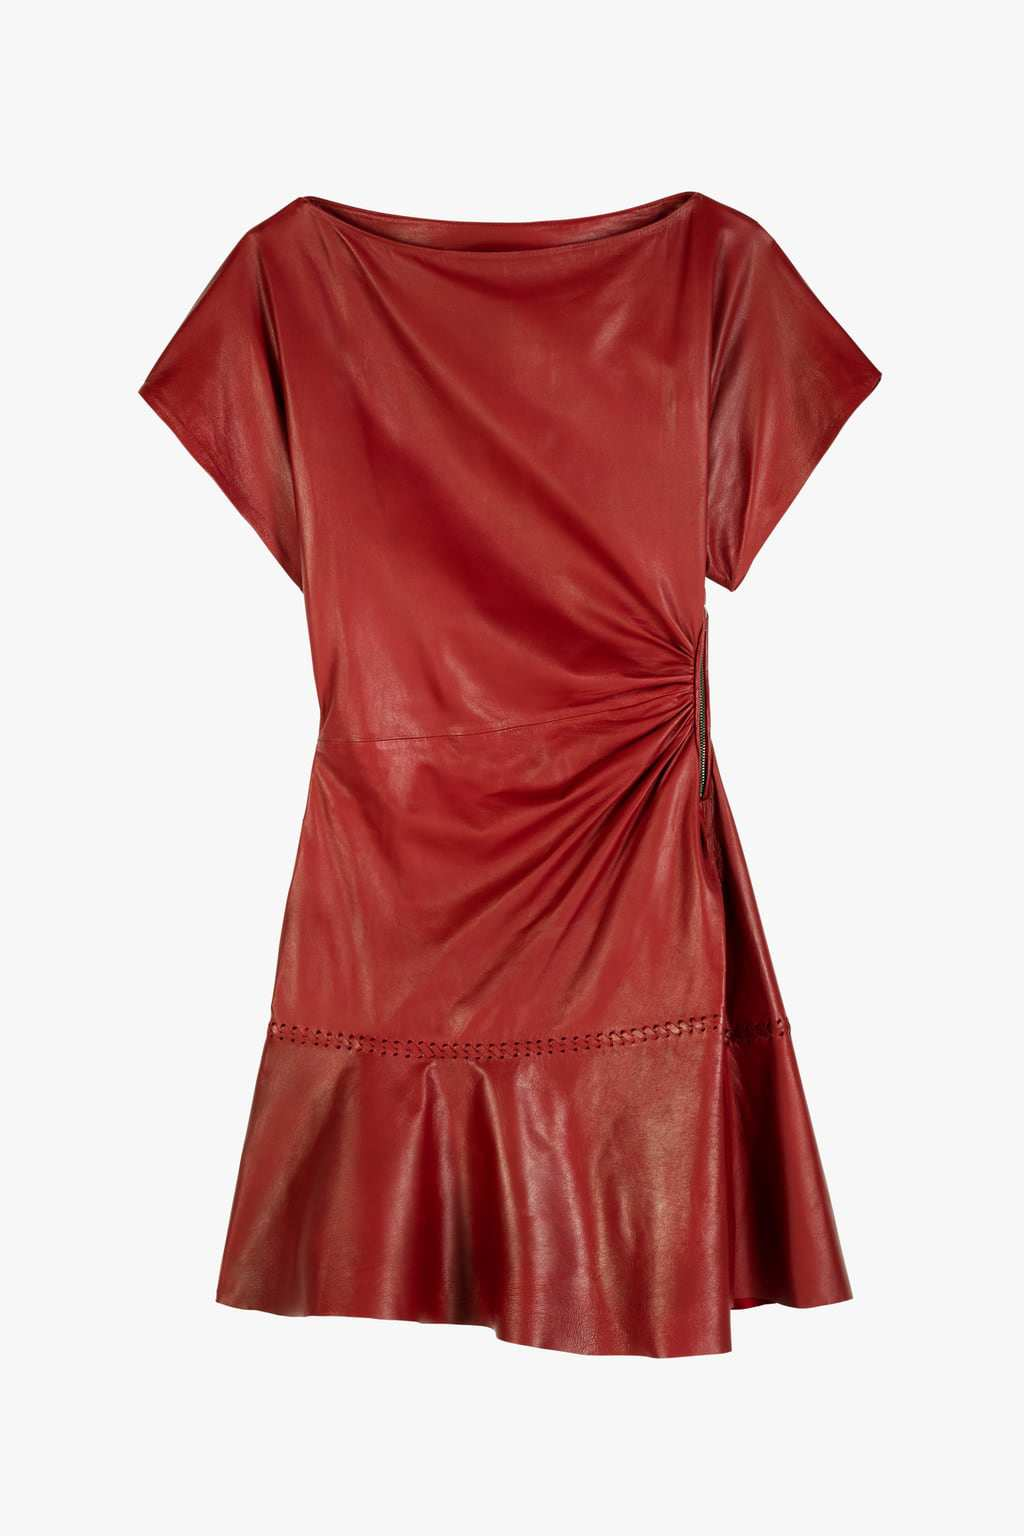 Vestido drapeado piel limited editio´n de Zara 199 euros 2